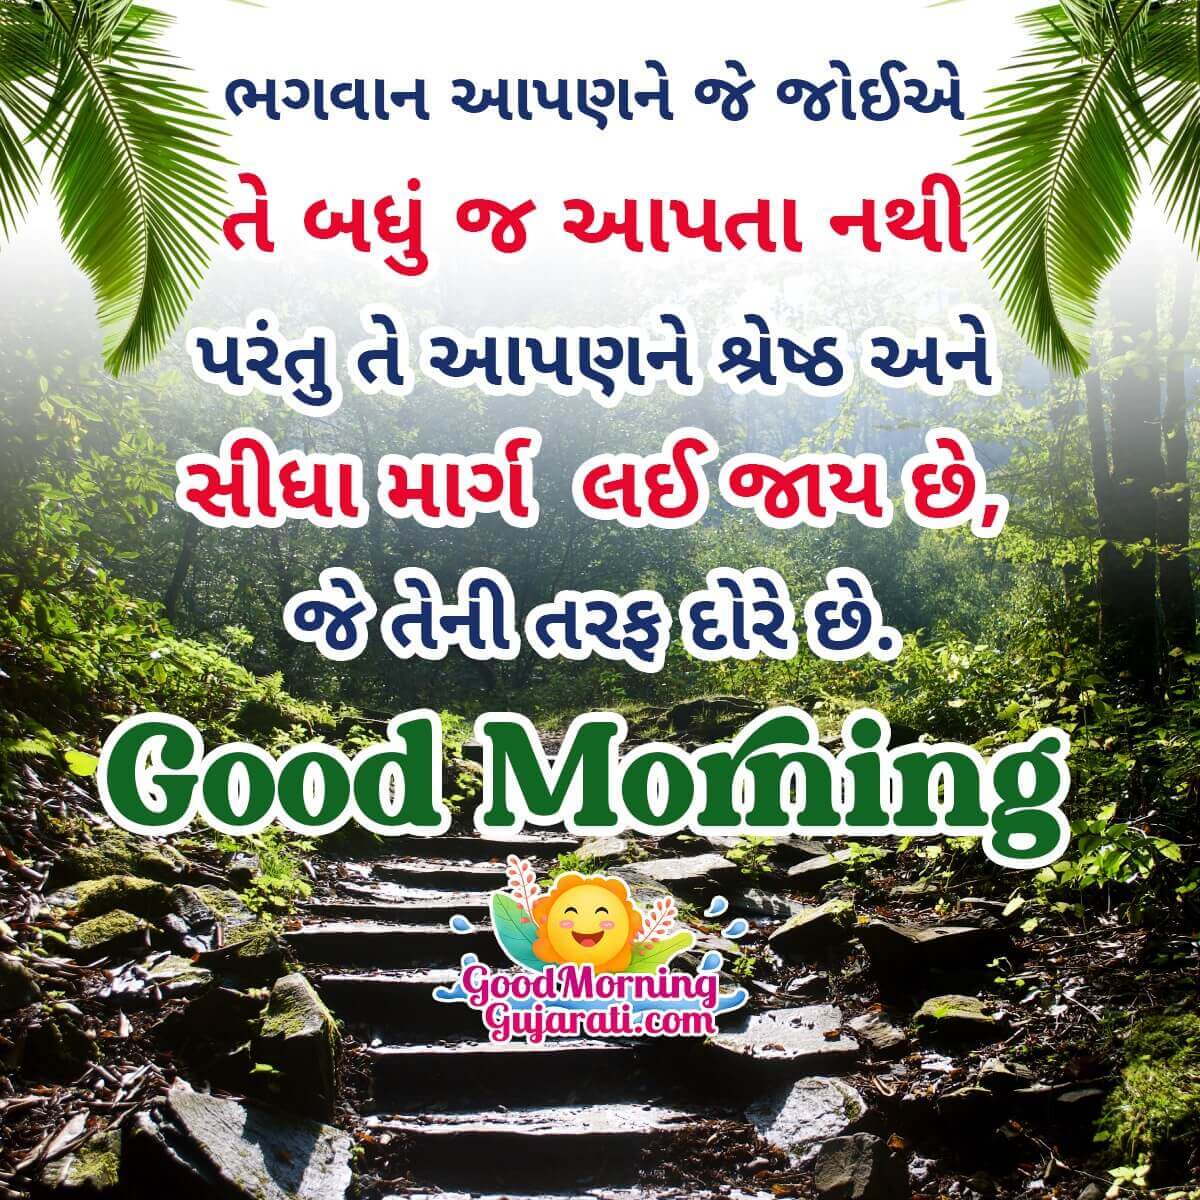 Good Morning Gujarati God Status Image